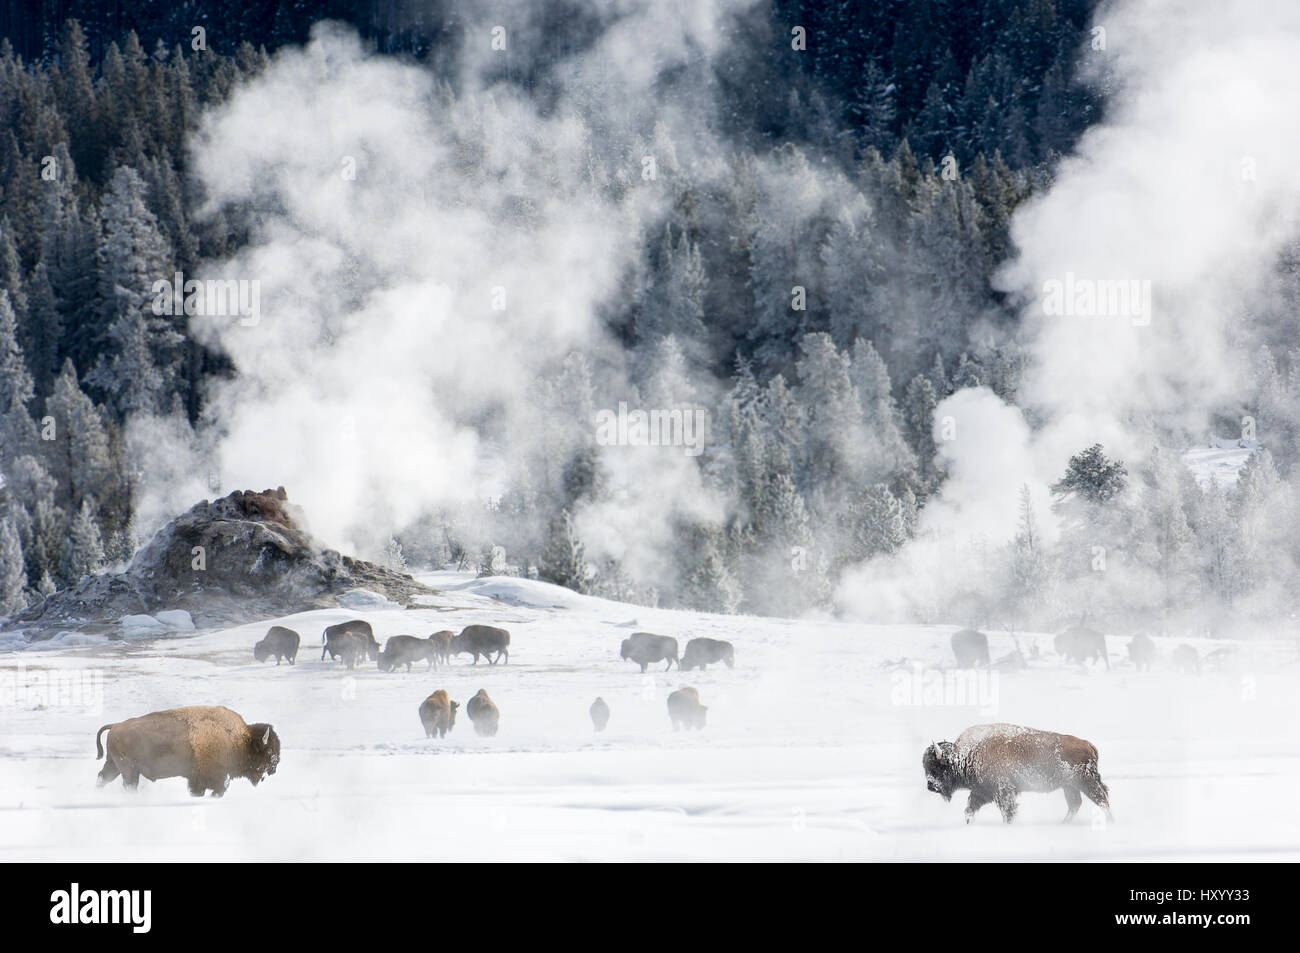 Troupeau de bison d'Amérique (Bison bison) autour de caractéristiques géo-thermique. Firehole River Valley. Le Parc National de Yellowstone, Wyoming, USA. Janvier 2008. Banque D'Images